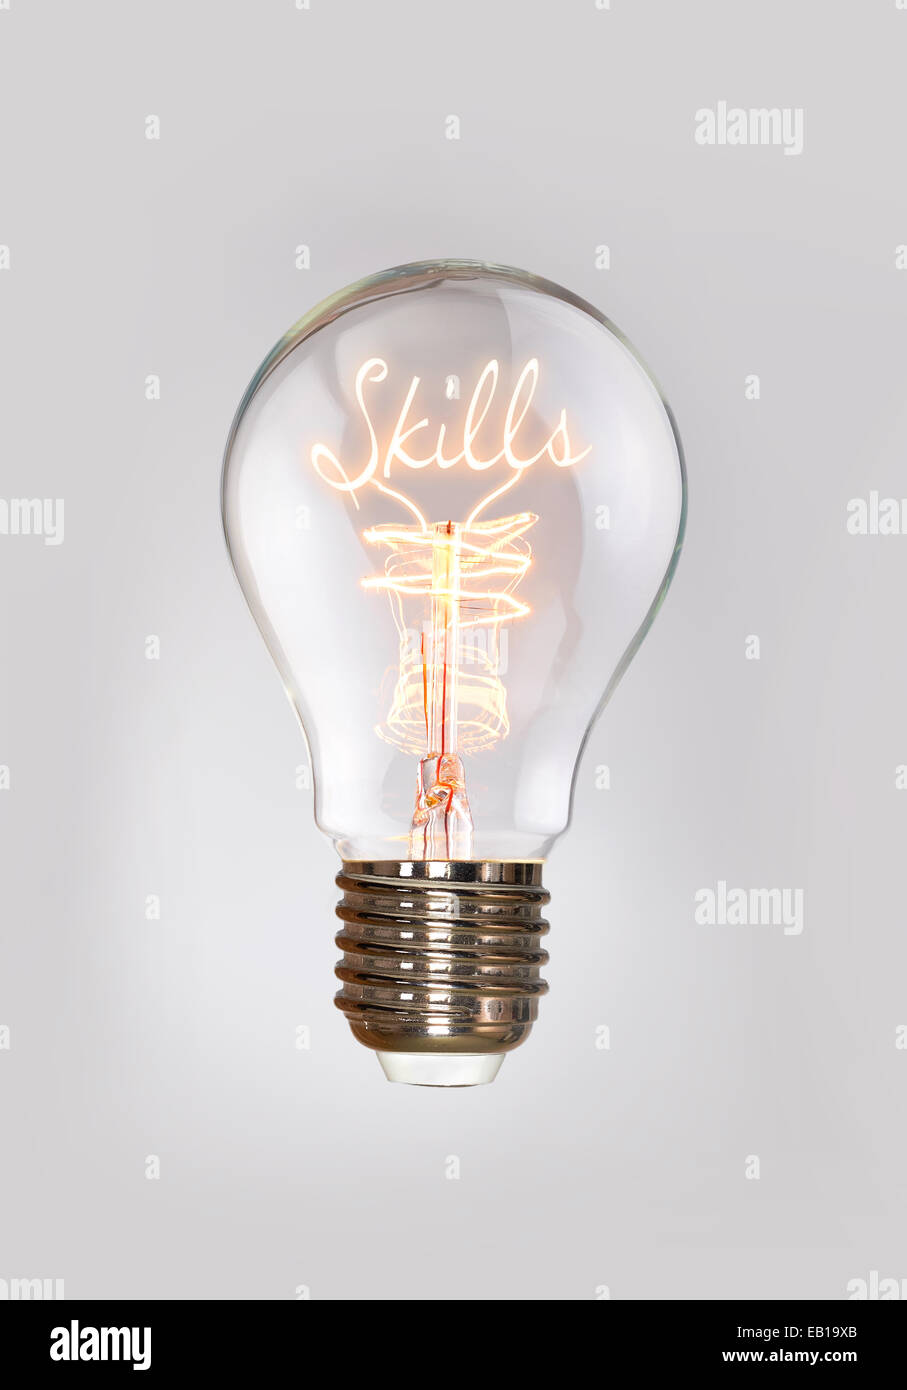 Il concetto di competenze in un filamento lampadina. Foto Stock